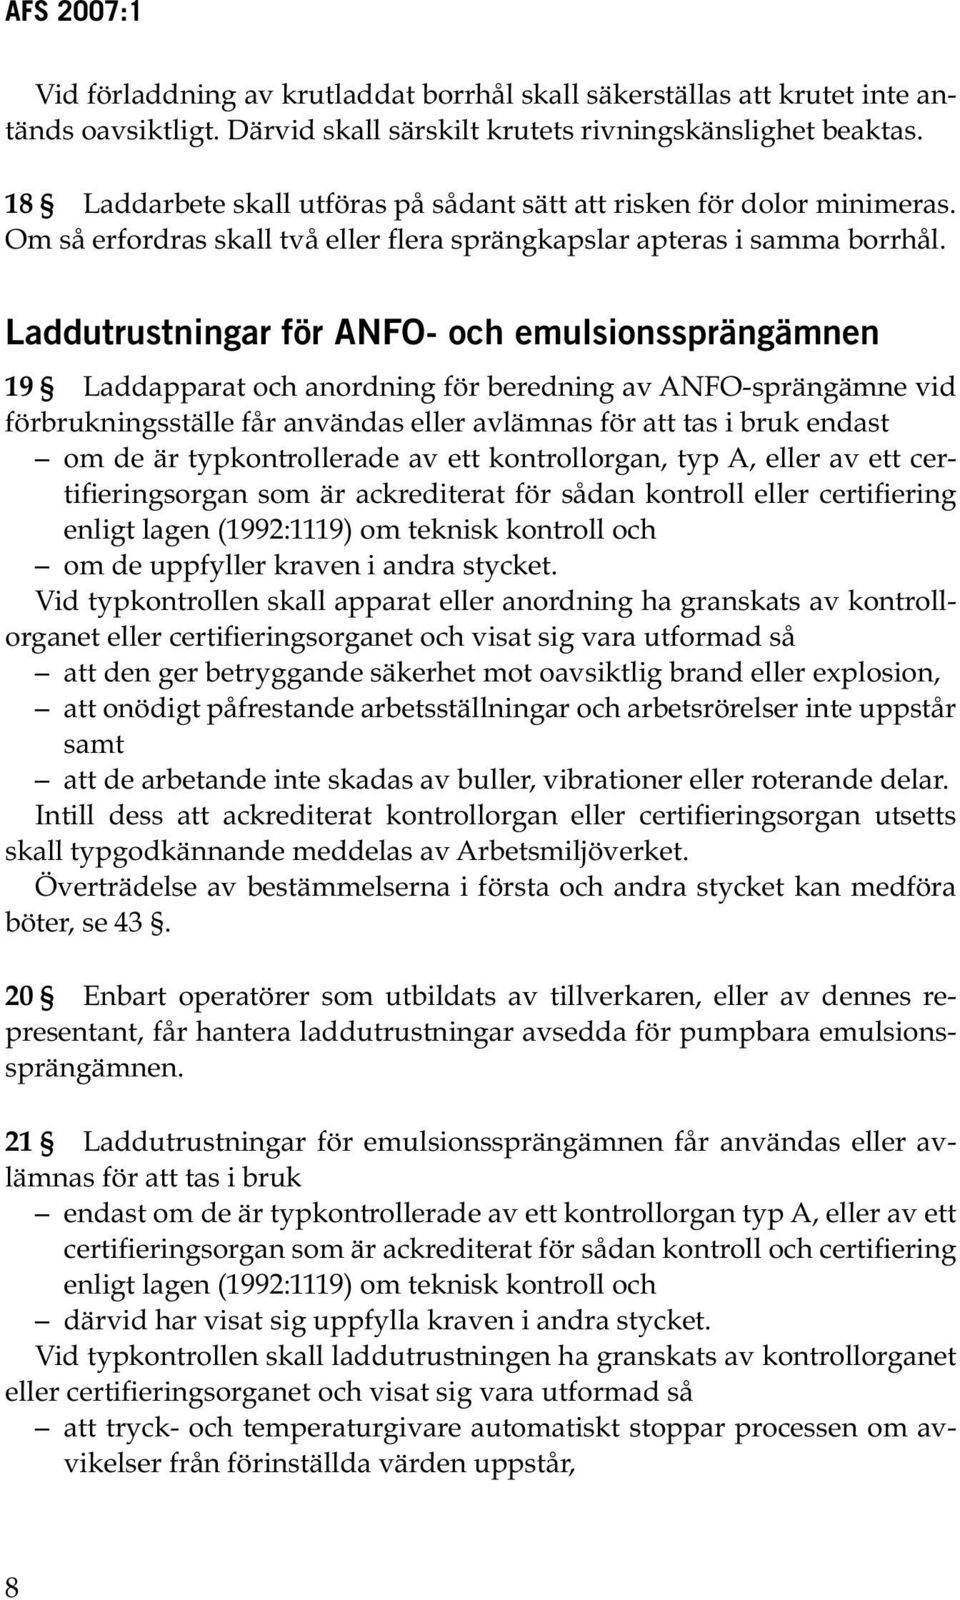 Laddutrustningar för ANFO- och emulsionssprängämnen 19 Laddapparat och anordning för beredning av ANFO sprängämne vid förbrukningsställe får användas eller avlämnas för att tas i bruk endast om de är